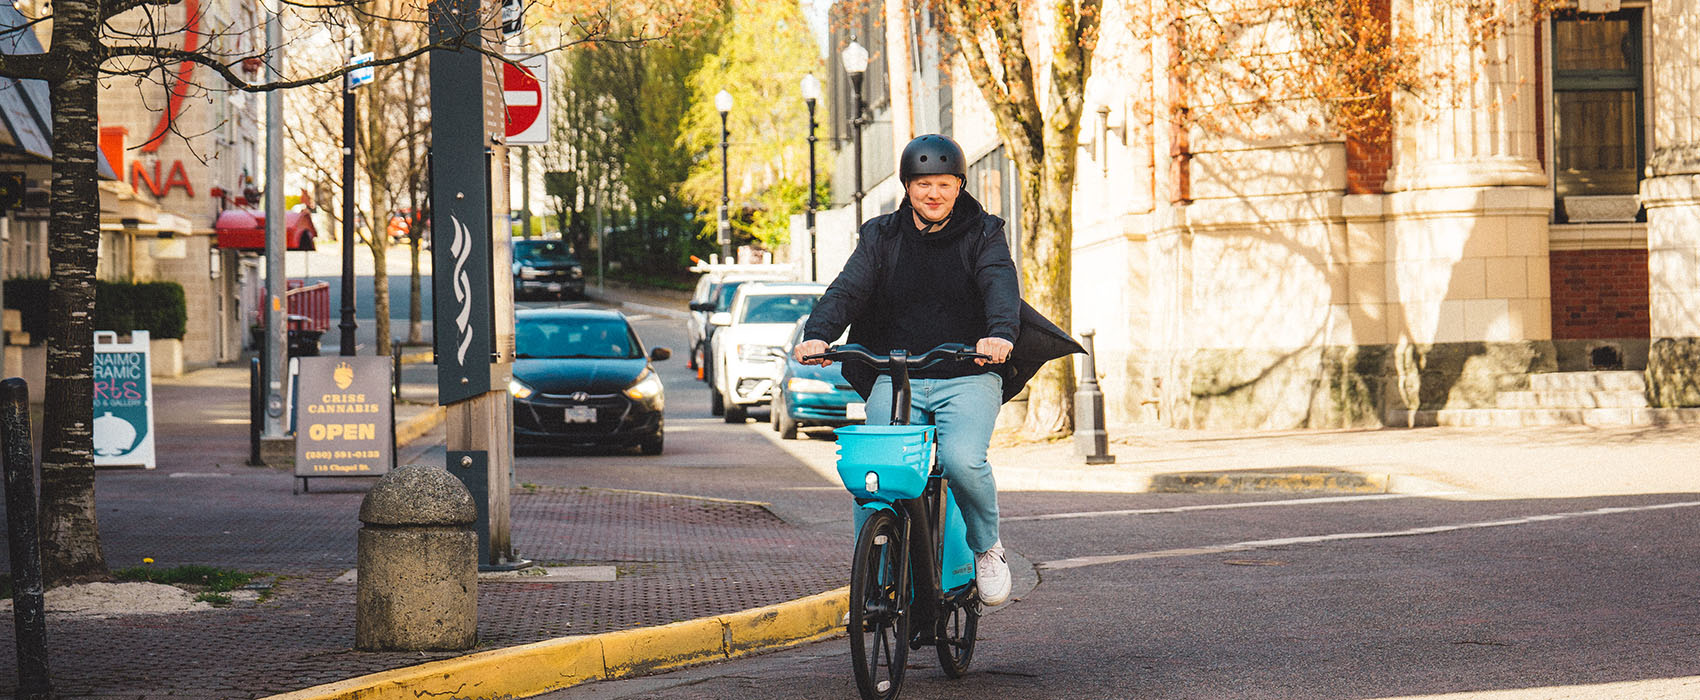 Man rides an Evolve e-bike through streets of Nanaimo